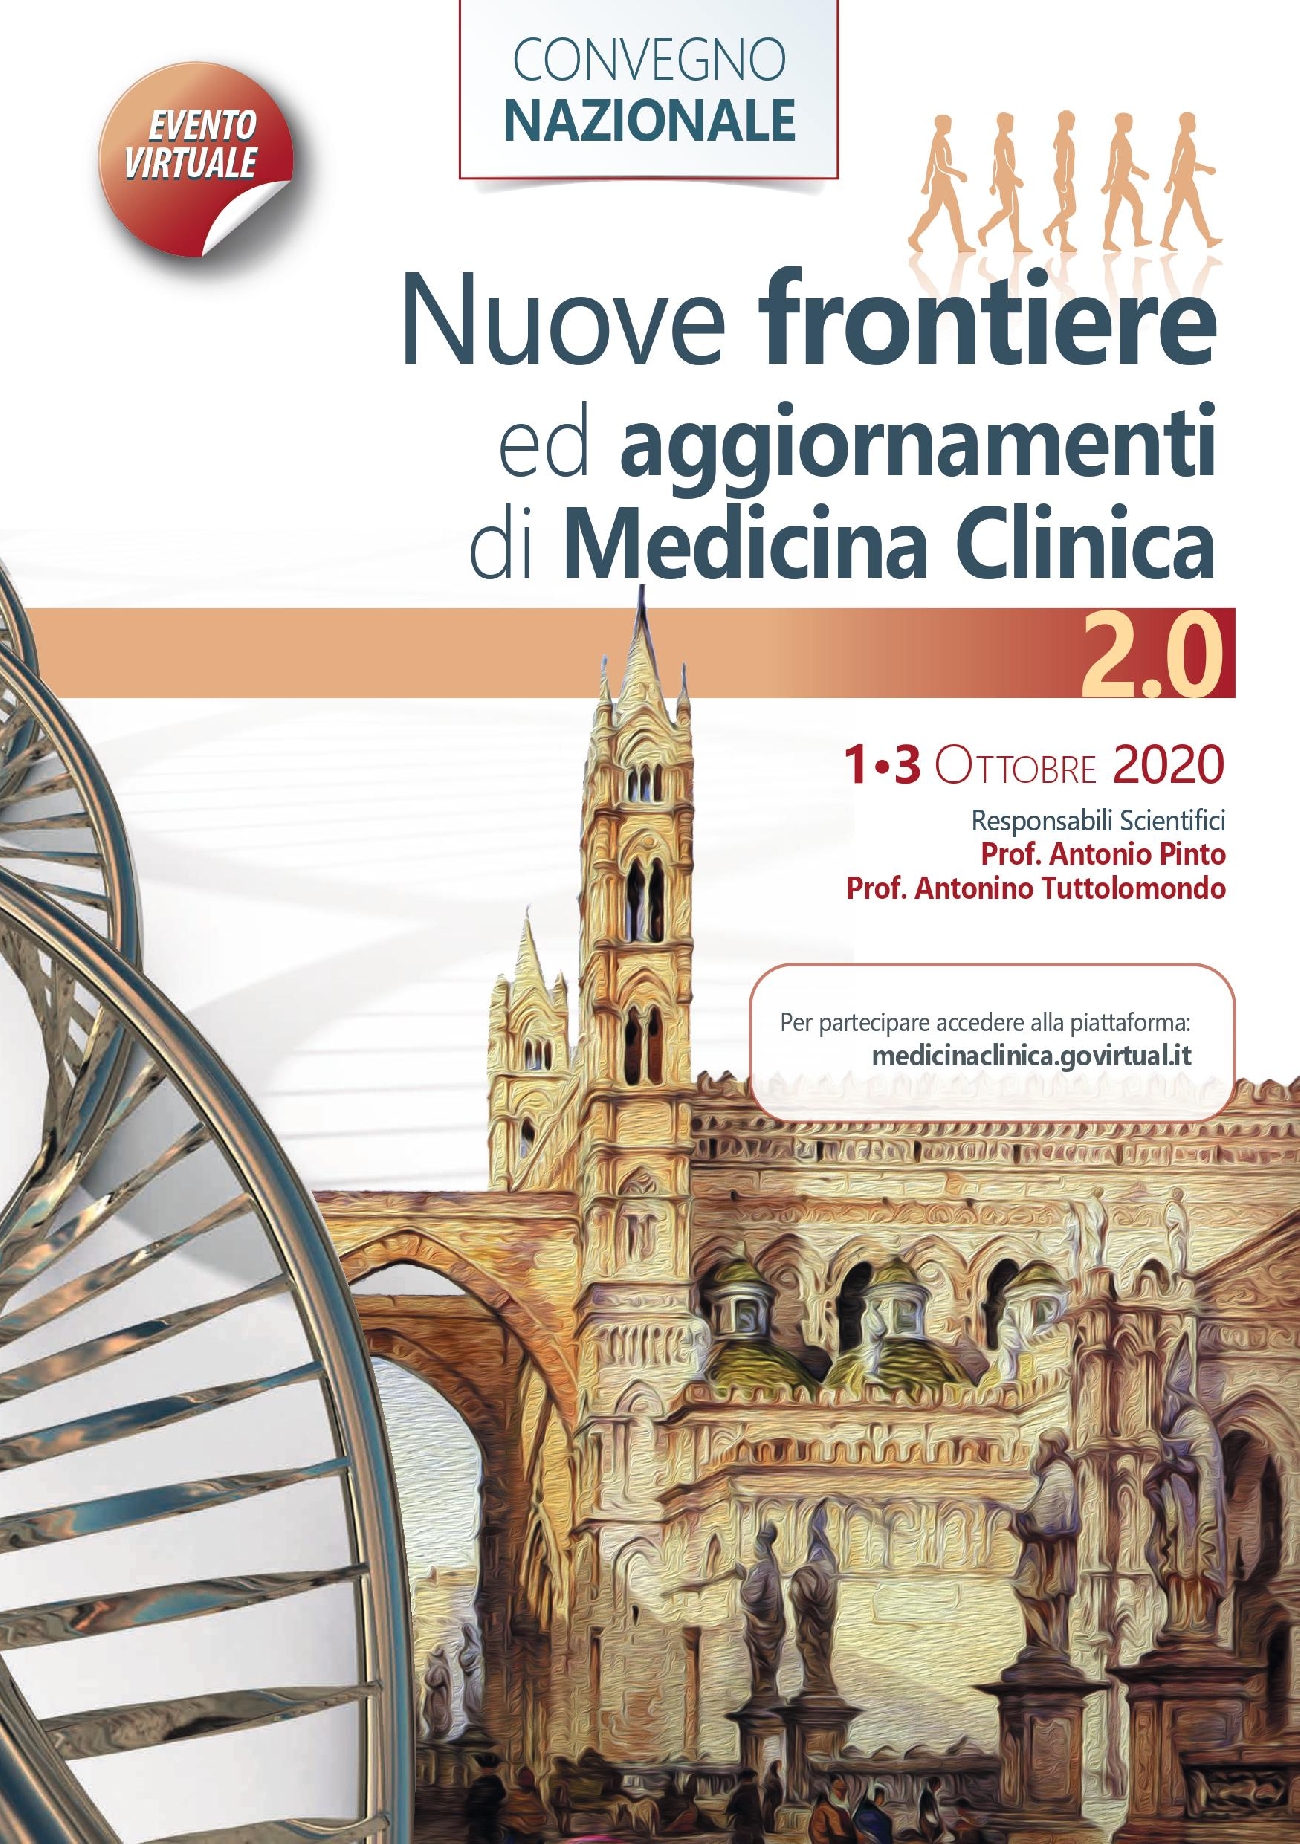 Convegno Nazionale - Nuove frontiere ed aggiornamenti di Medicina Clinica 2.0